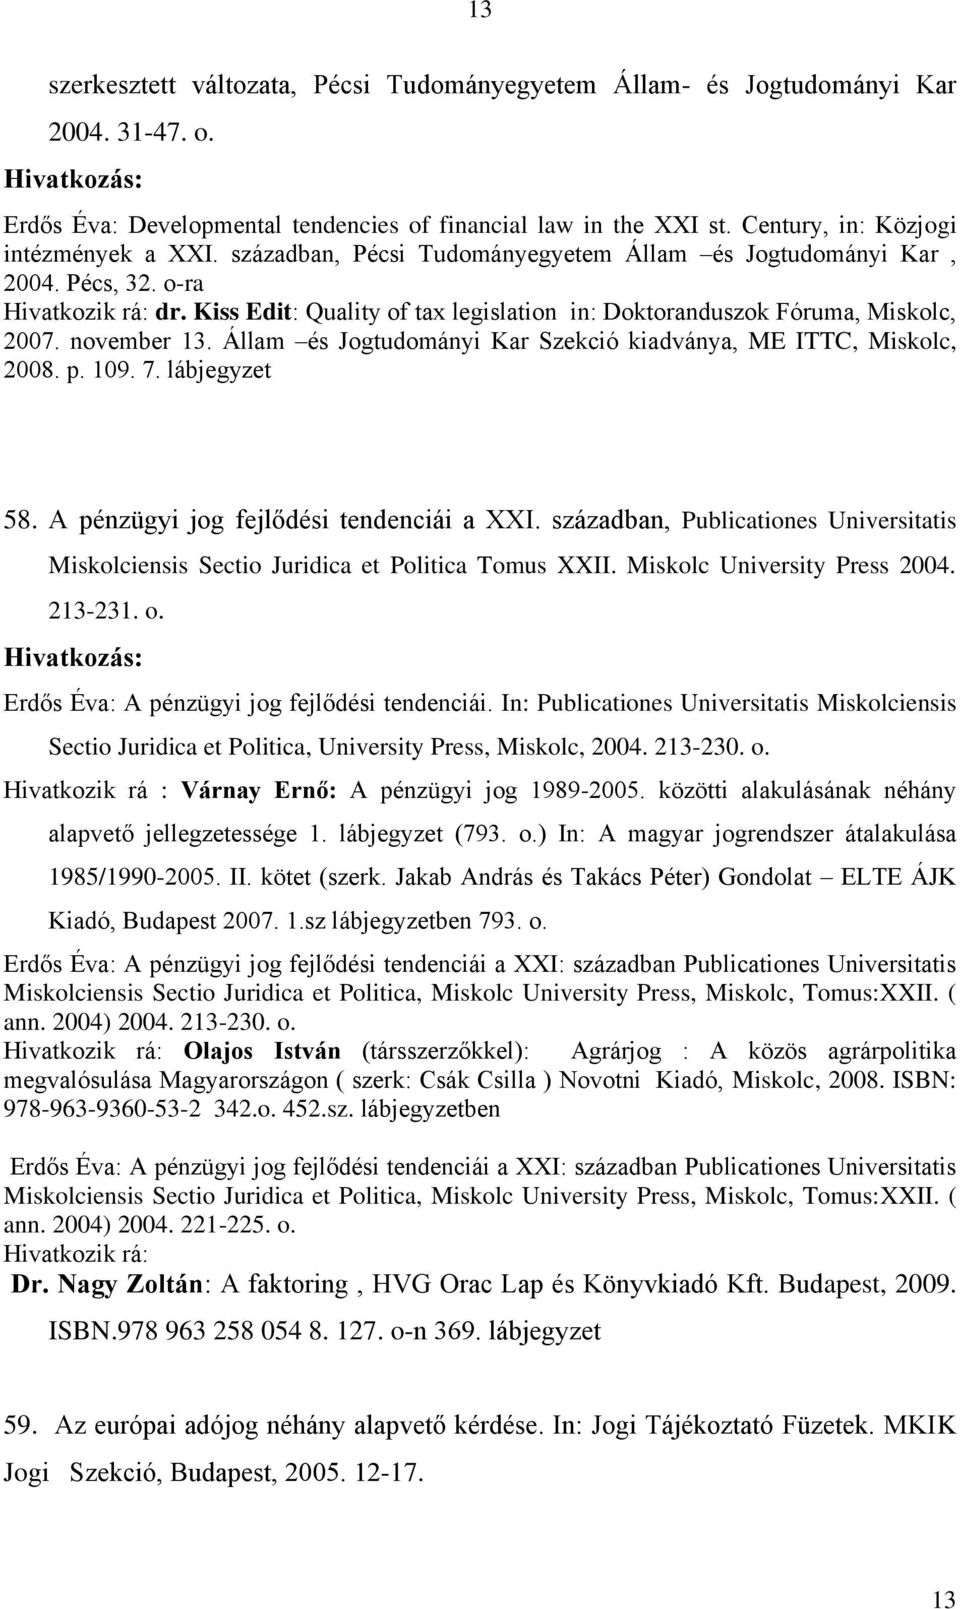 Kiss Edit: Quality of tax legislation in: Doktoranduszok Fóruma, Miskolc, 2007. november 13. Állam és Jogtudományi Kar Szekció kiadványa, ME ITTC, Miskolc, 2008. p. 109. 7. lábjegyzet 58.